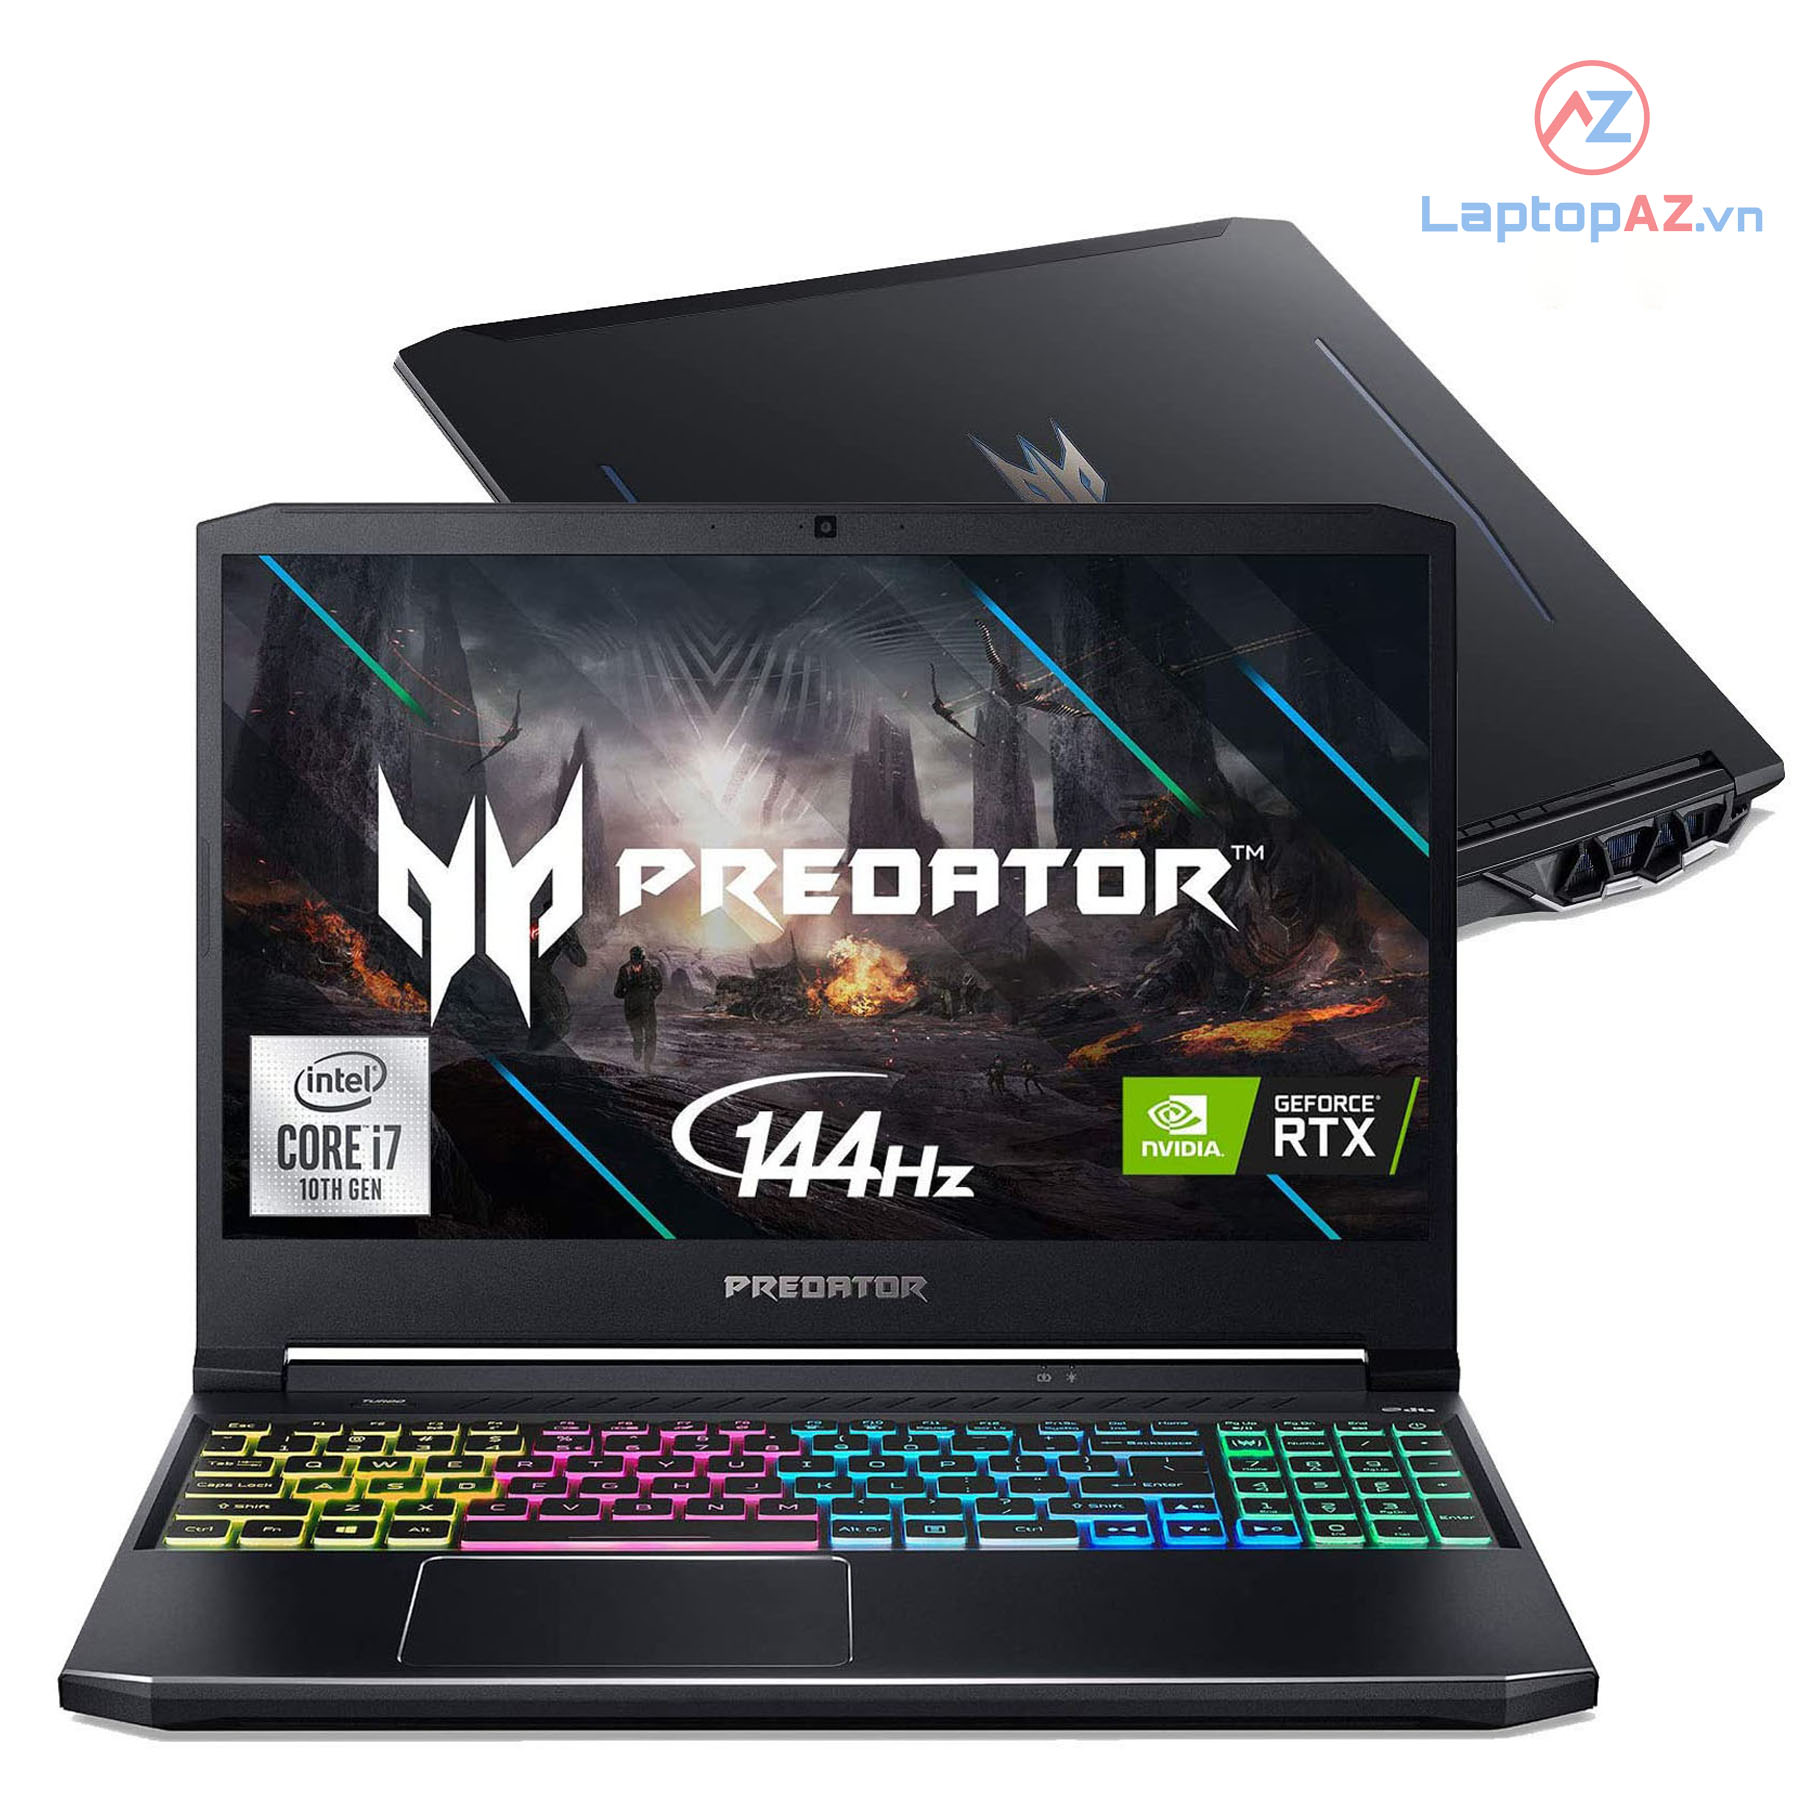 [Mới 100%] Acer Predator Helios 300 2020 (Core i7-10750H, 16GB, 512GB, VGA RTX 2060 6GB, 15.6 inch FHD 144Hz) 